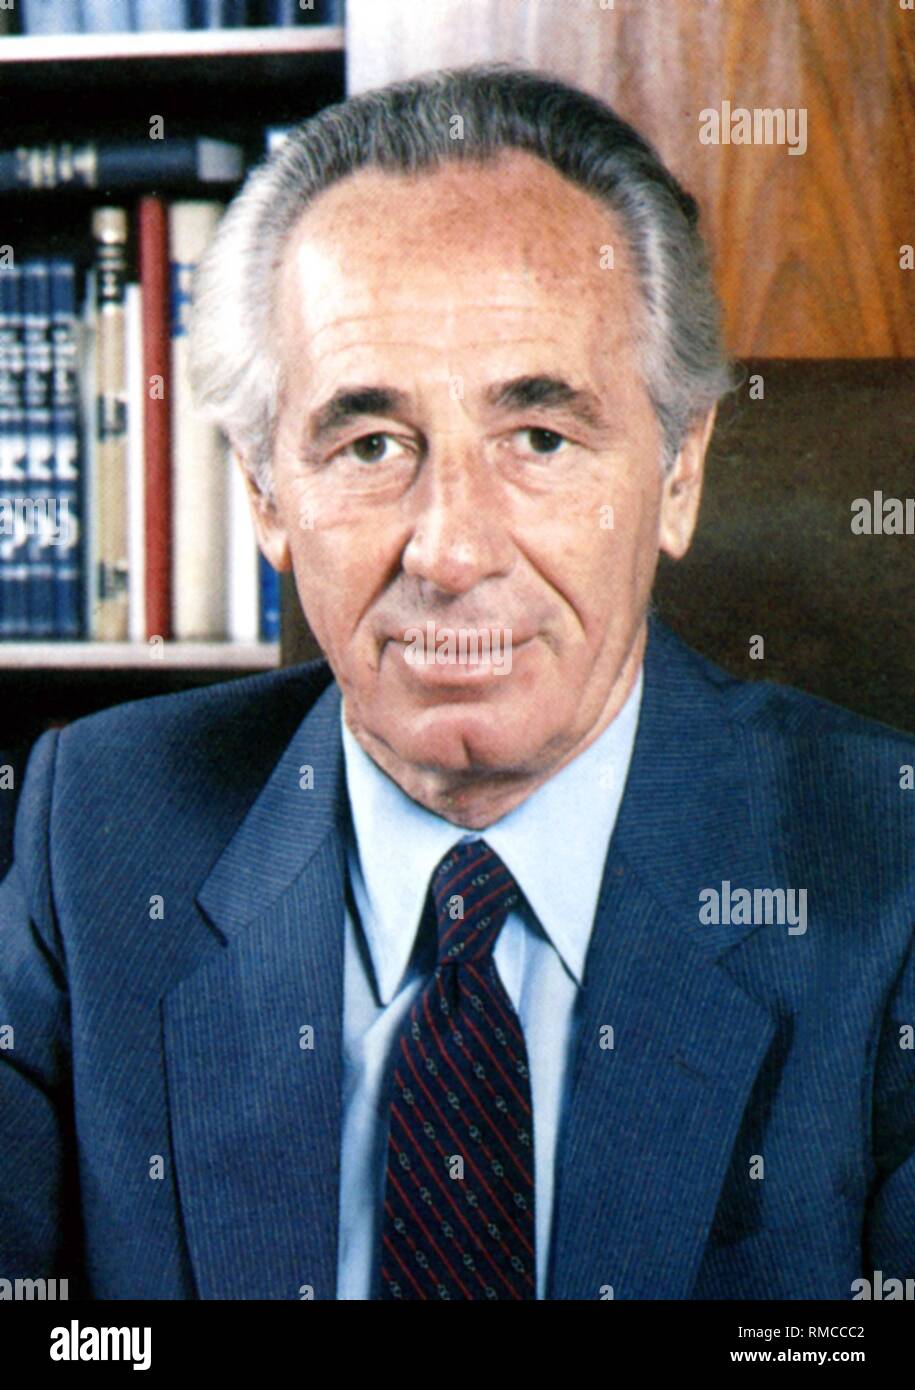 Shimon Peres - * 02.08.1923 - Porträt des Präsidenten des Staates Israel an seinem Schreibtisch während seiner Amtszeit als Premierminister von 1984 bis 1986 war er erneut Ministerpräsident von 1995 bis 1996. Undatiertes Foto von 1985. Stockfoto